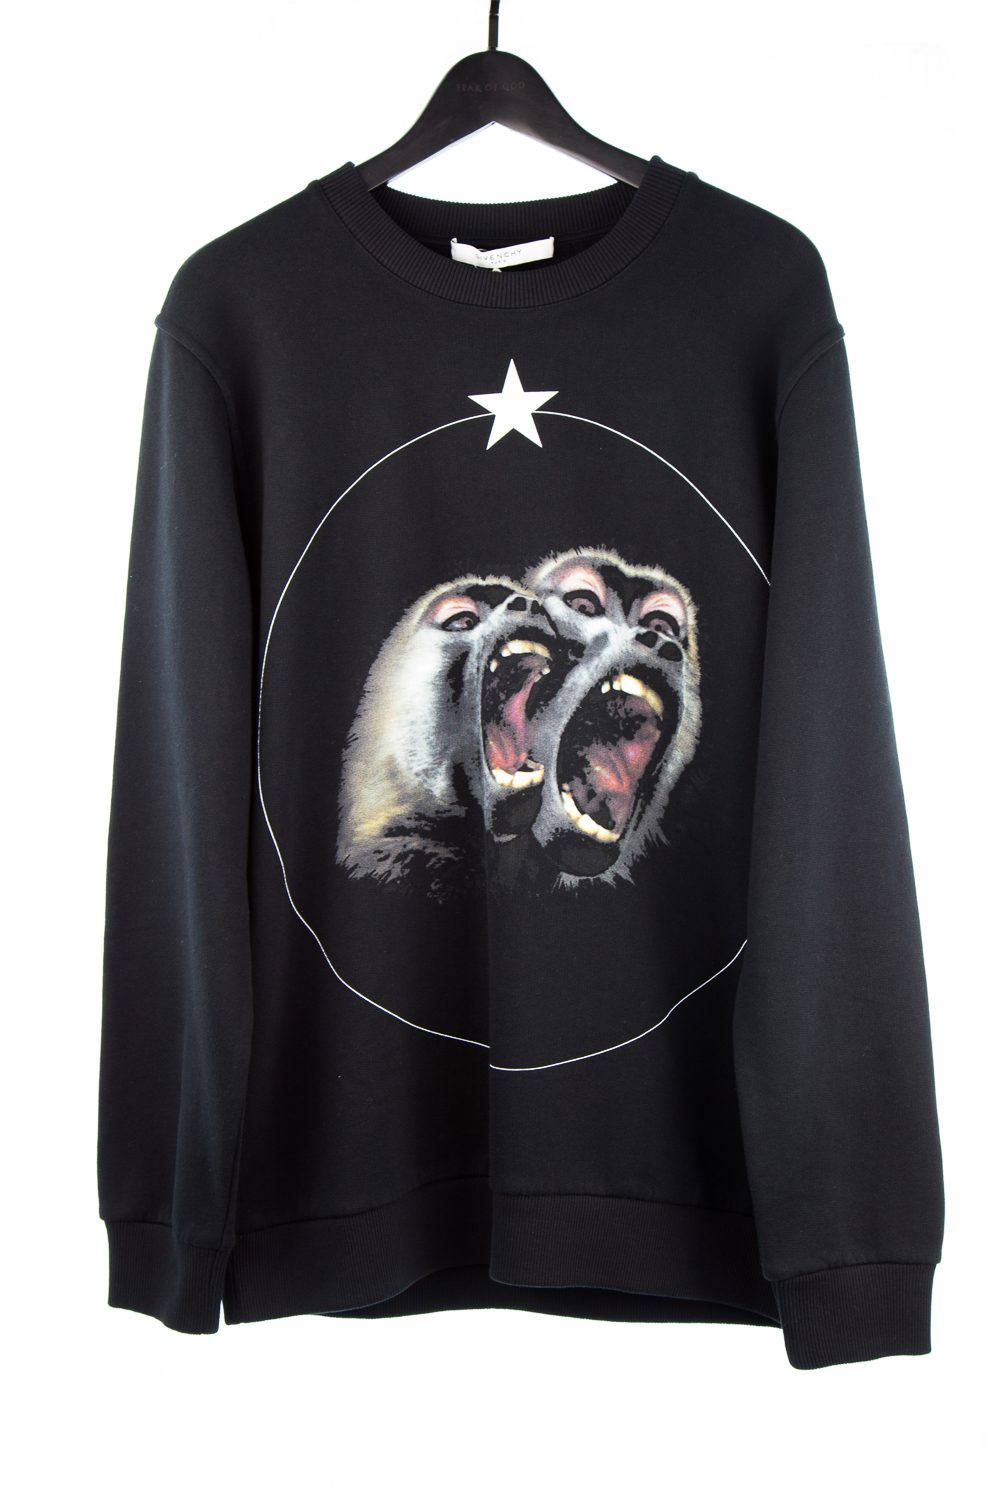 NWT Fw16 “Monkey Brothers” Sweatshirt